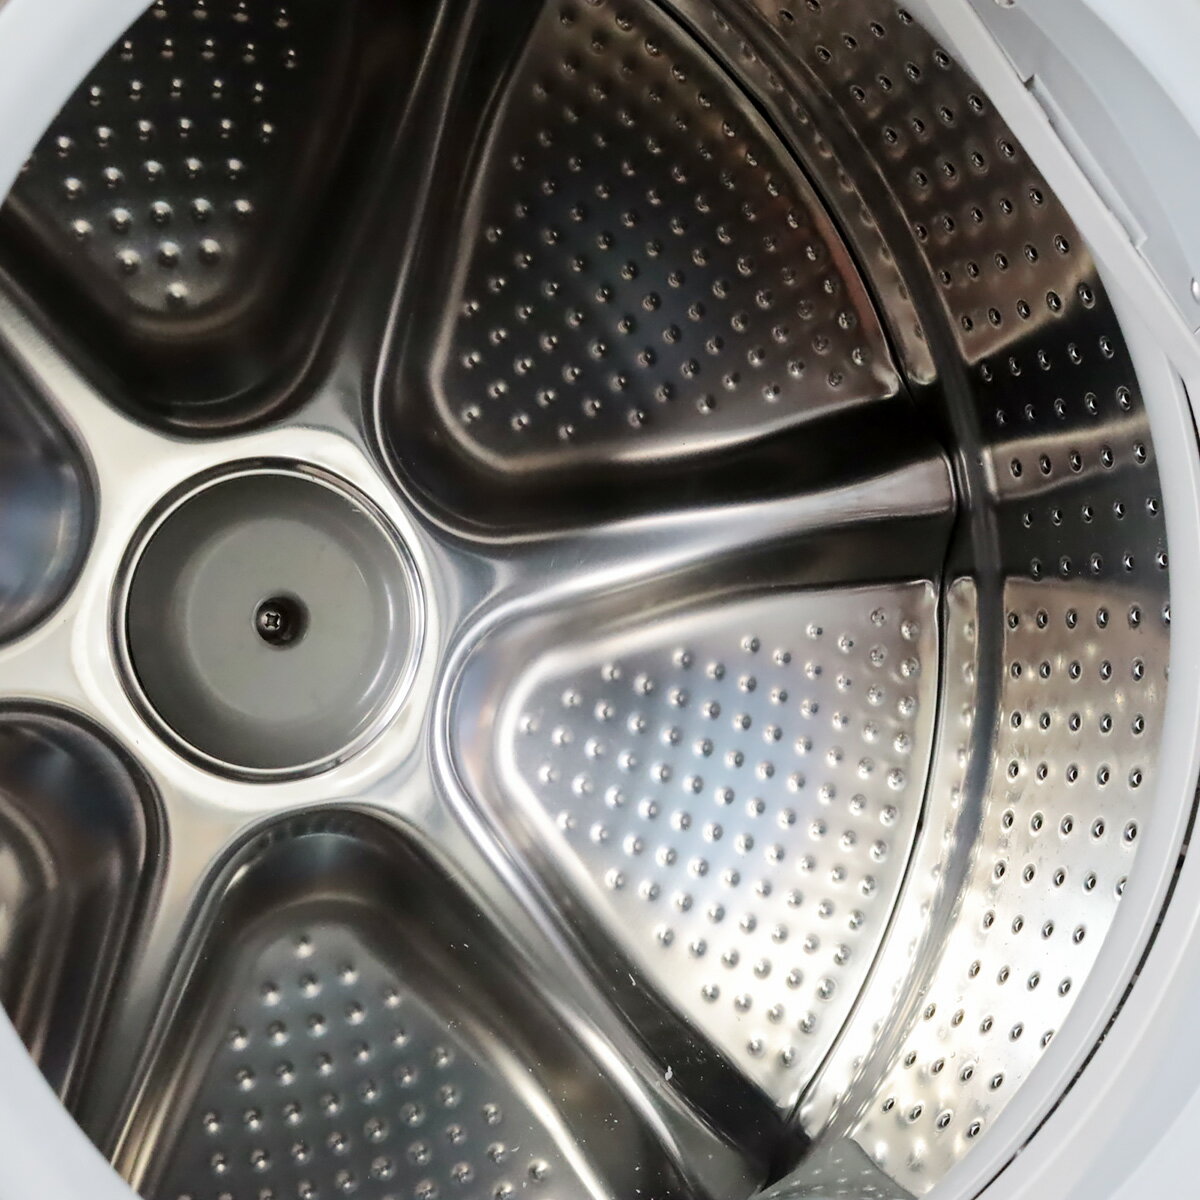 【中古/屋内搬入付】 ドラム式洗濯乾燥機 11kg 美品 30日保証 日立 BD-V9800R-N 右開き 温風乾燥 自動おそうじ 節水 風呂水 EG4533